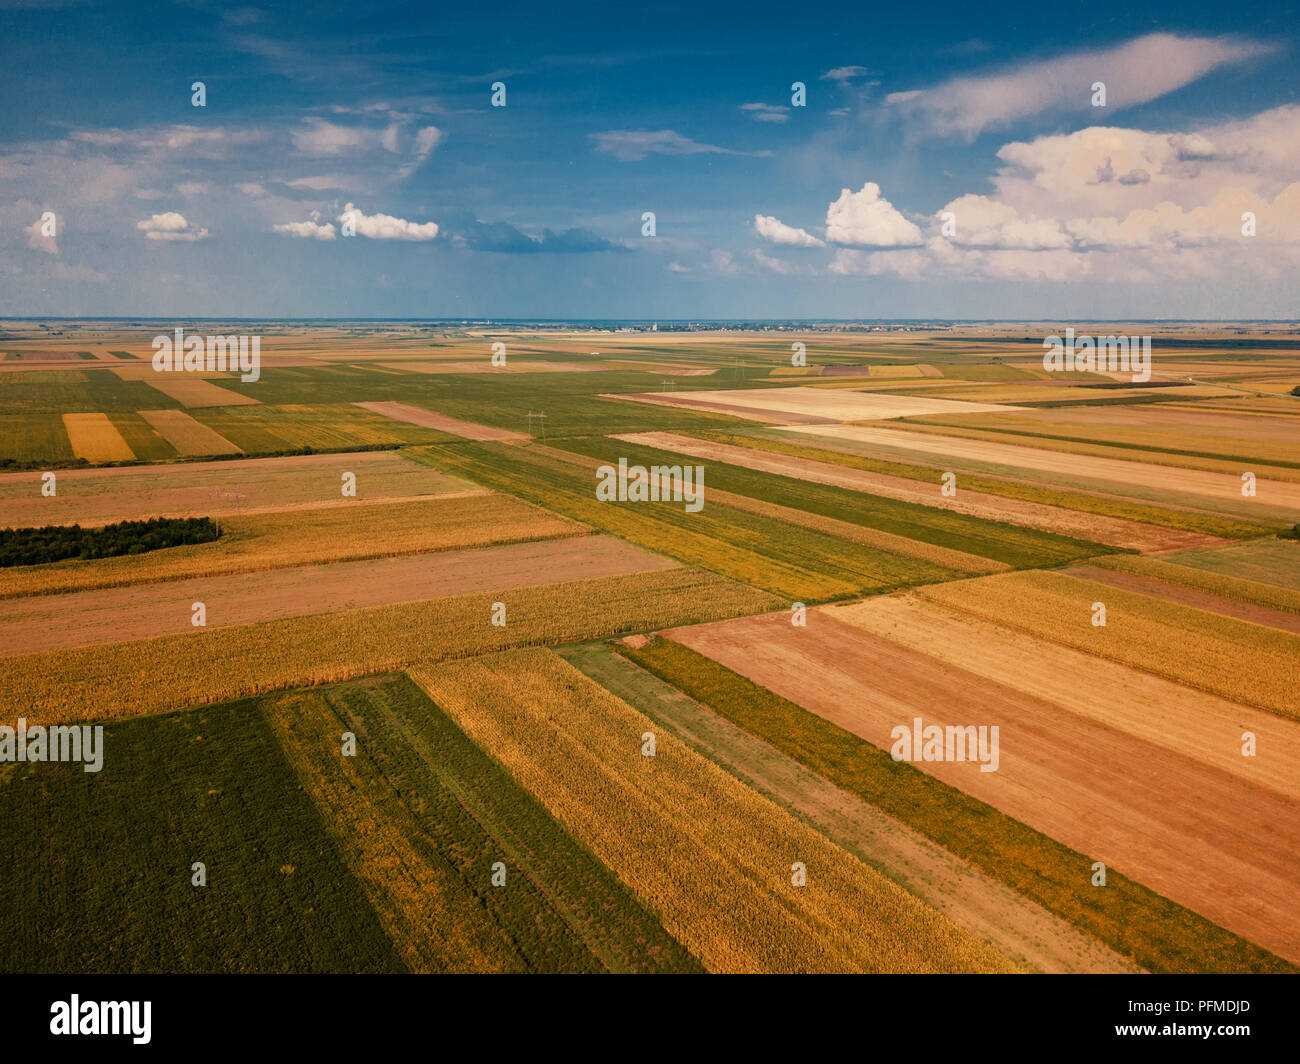 Drone photographie de champs cultivés dans la plaine d'été, paysage de campagne high angle view Banque D'Images